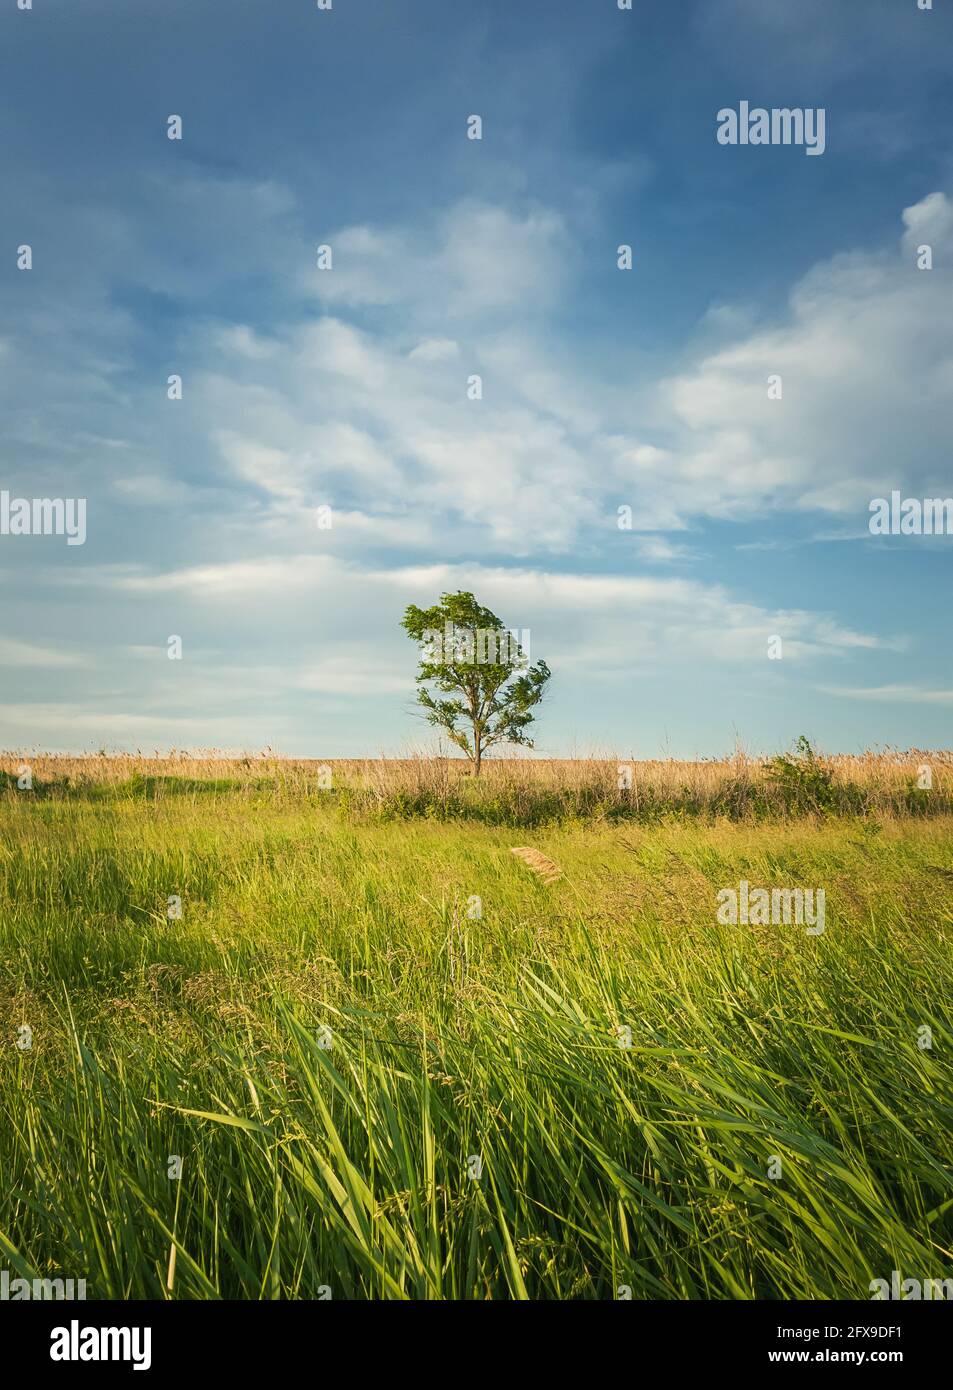 Pintoresco paisaje veraniego con un árbol solitario en el campo rodeado de vegetación de caña. Tierra vacía, idílica escena rural de la naturaleza. Campo estacional Foto de stock